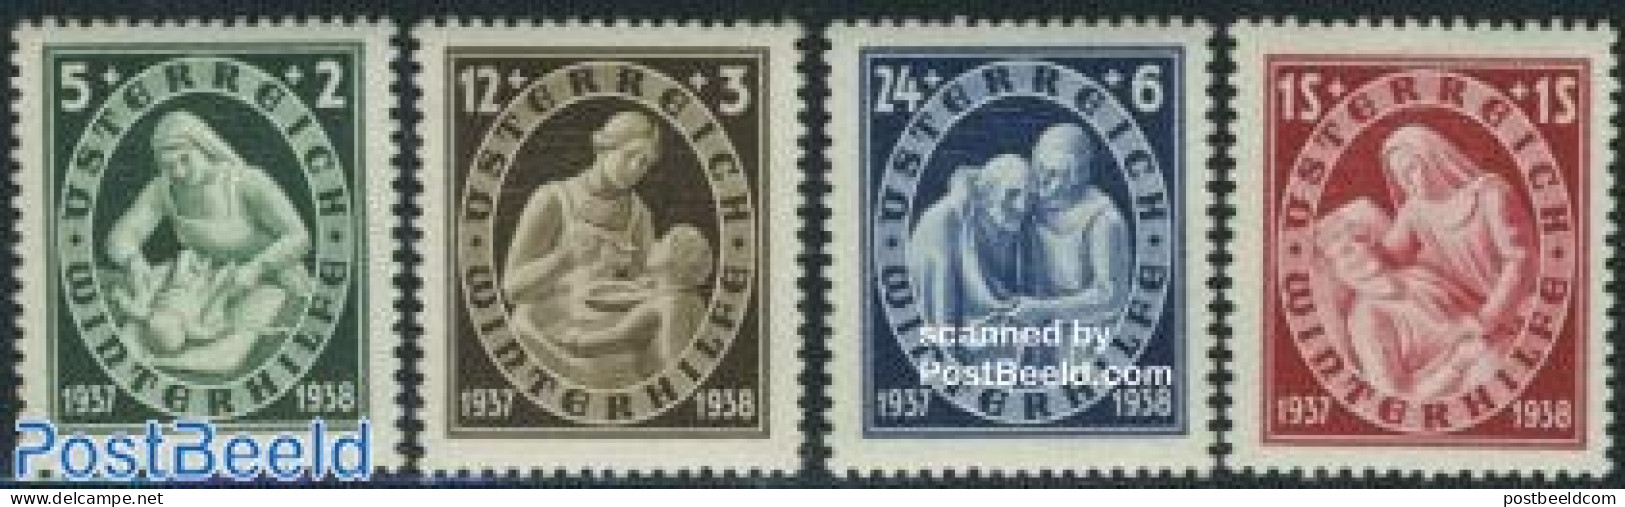 Austria 1937 Winter Aid 4v, Unused (hinged) - Unused Stamps